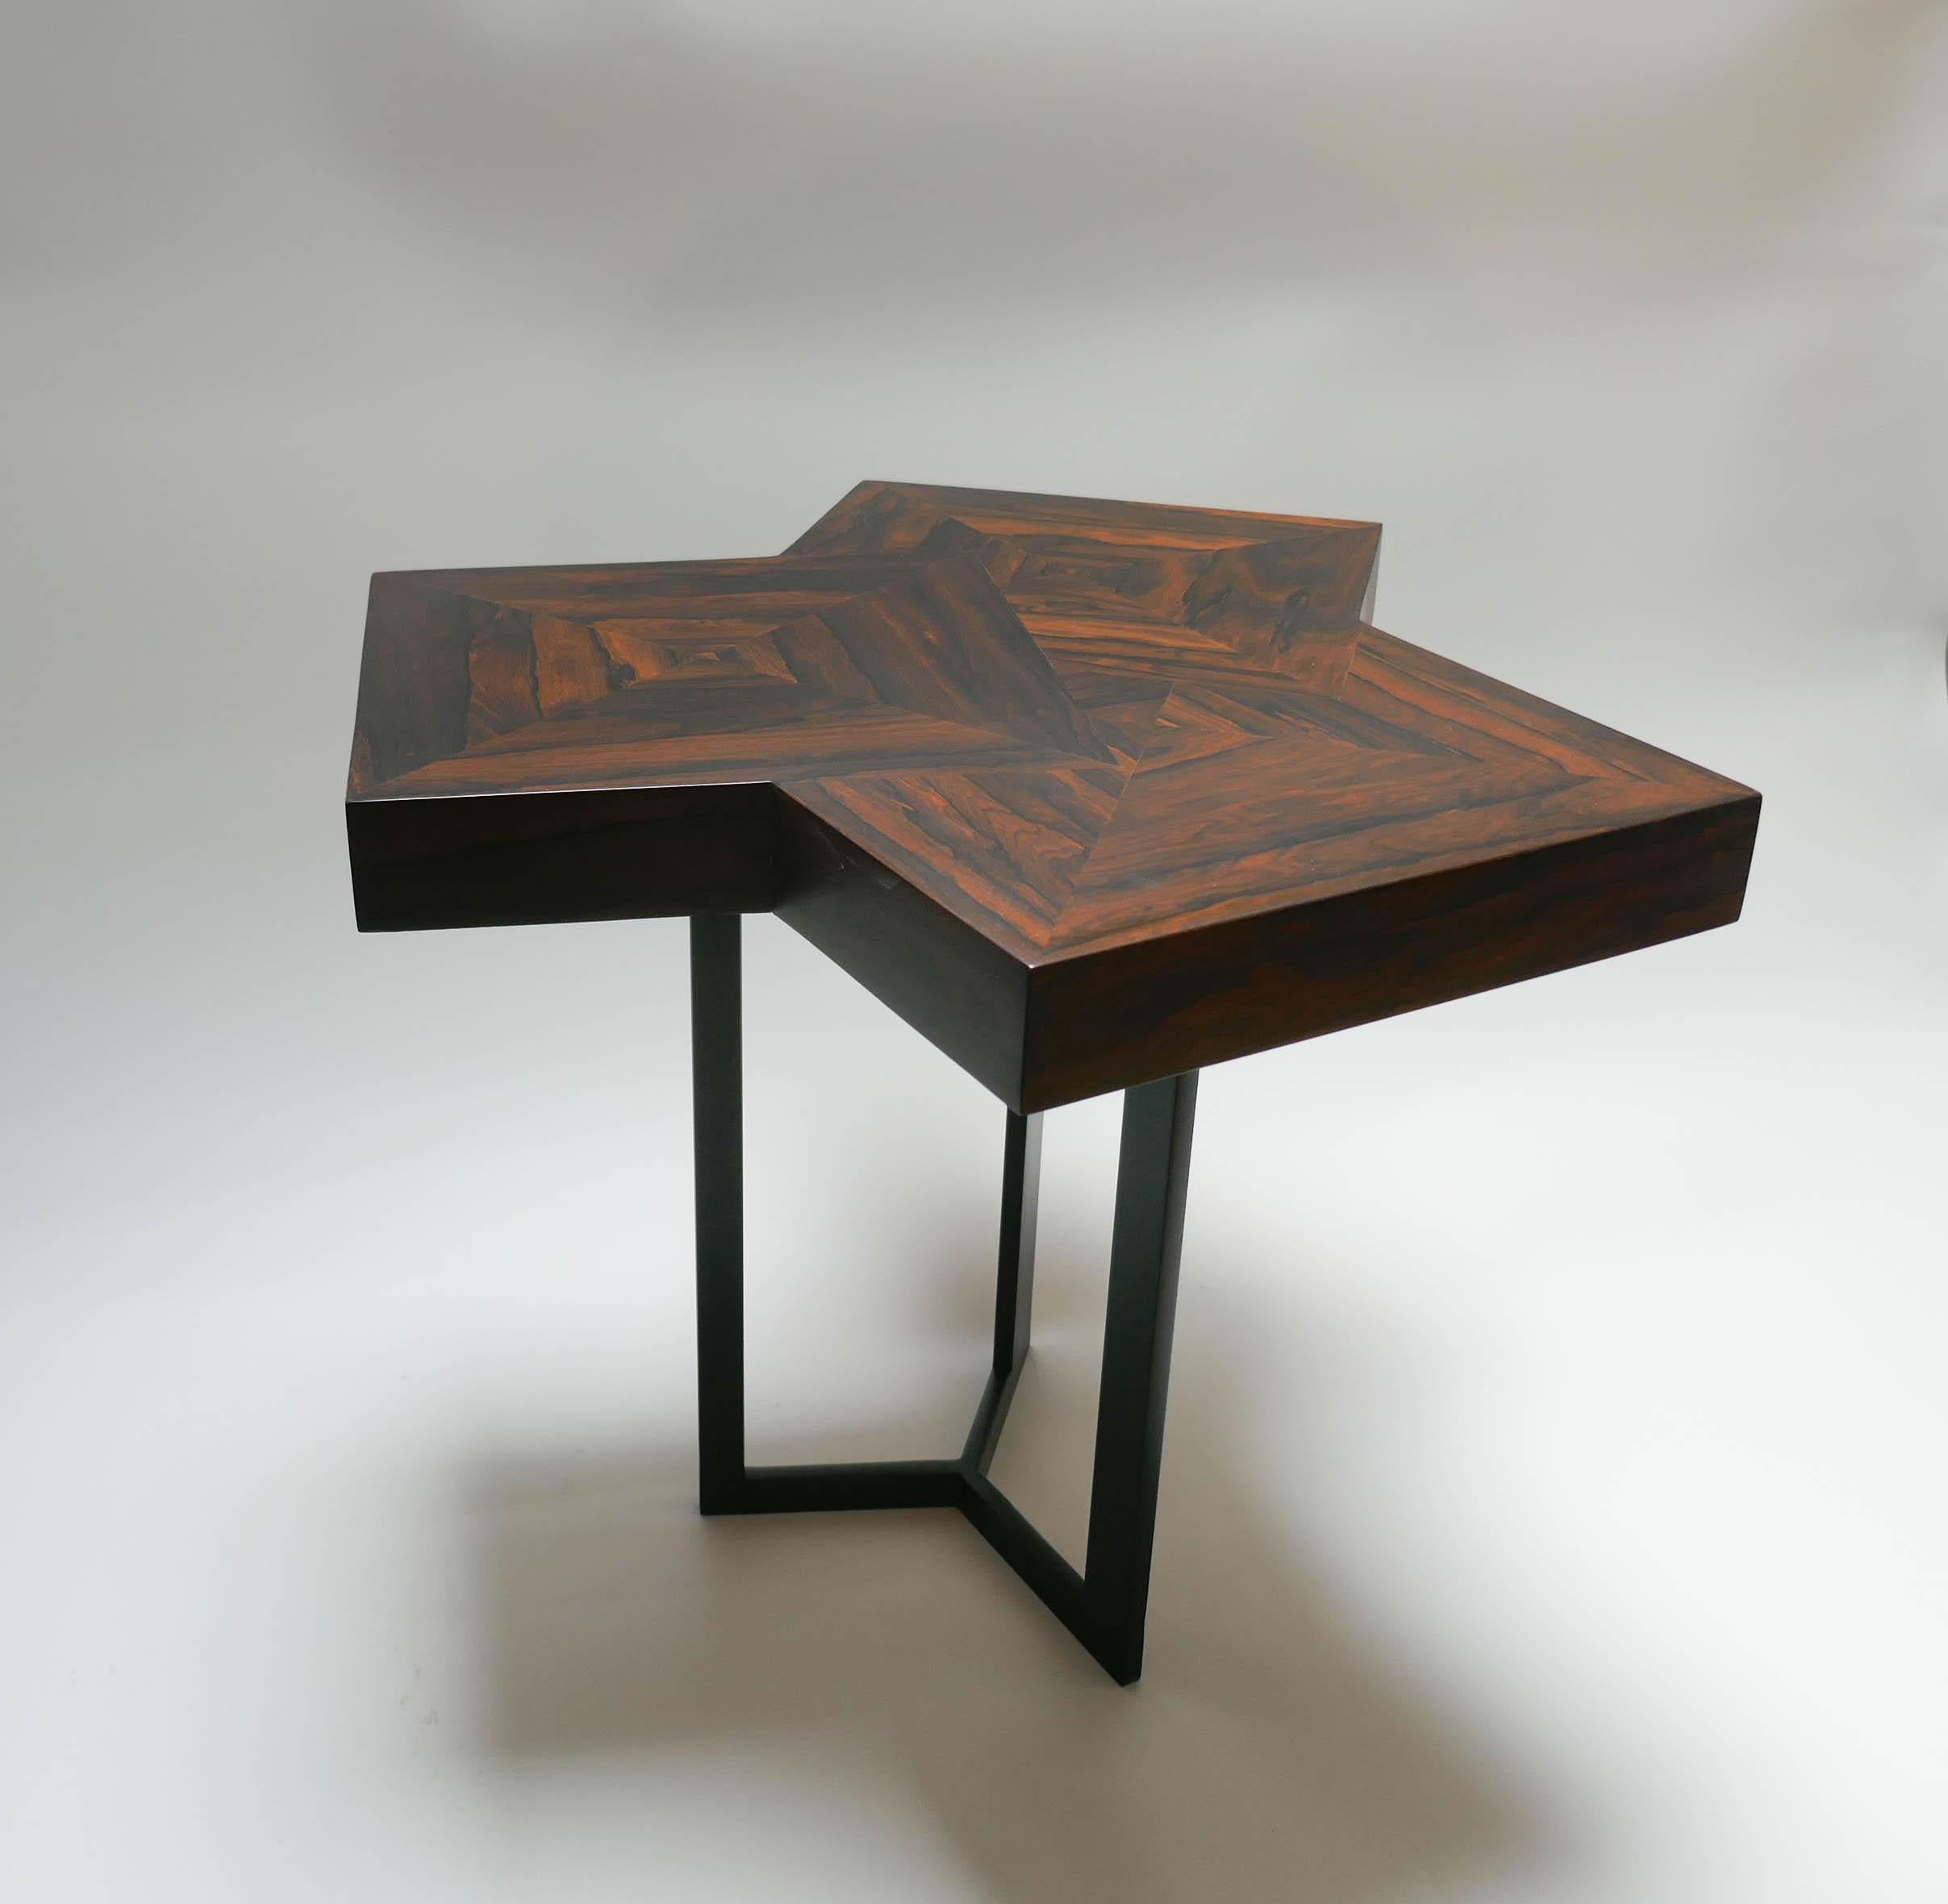 Paire de tables basses en Ziricotte  bois et métal laqués noir.
Veuillez demander un devis d'expédition pour obtenir le meilleur prix possible.